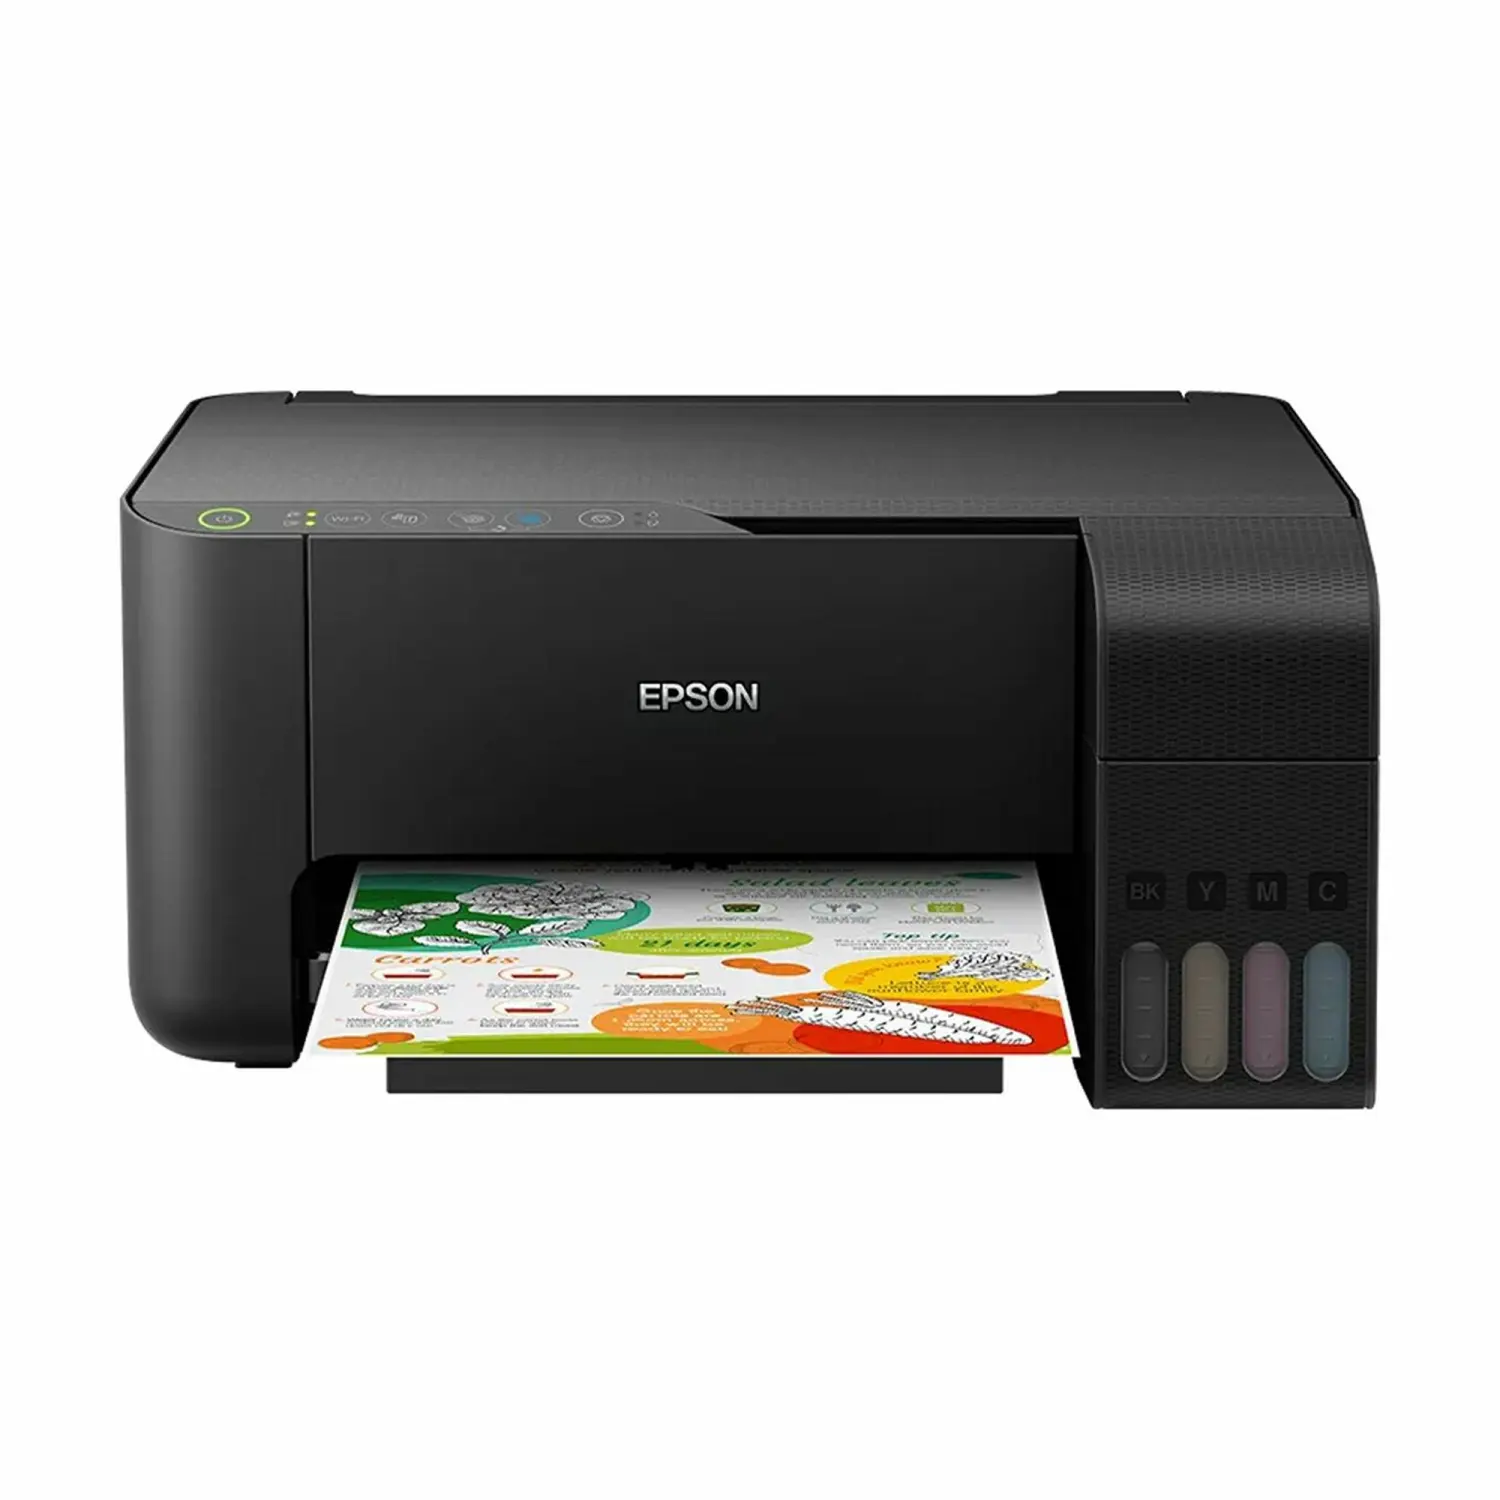 Eps L3258/L3256 Printer Inkjet warna A4 semua dalam satu cetakan-scan-copy Printer dengan Wi-fi langsung